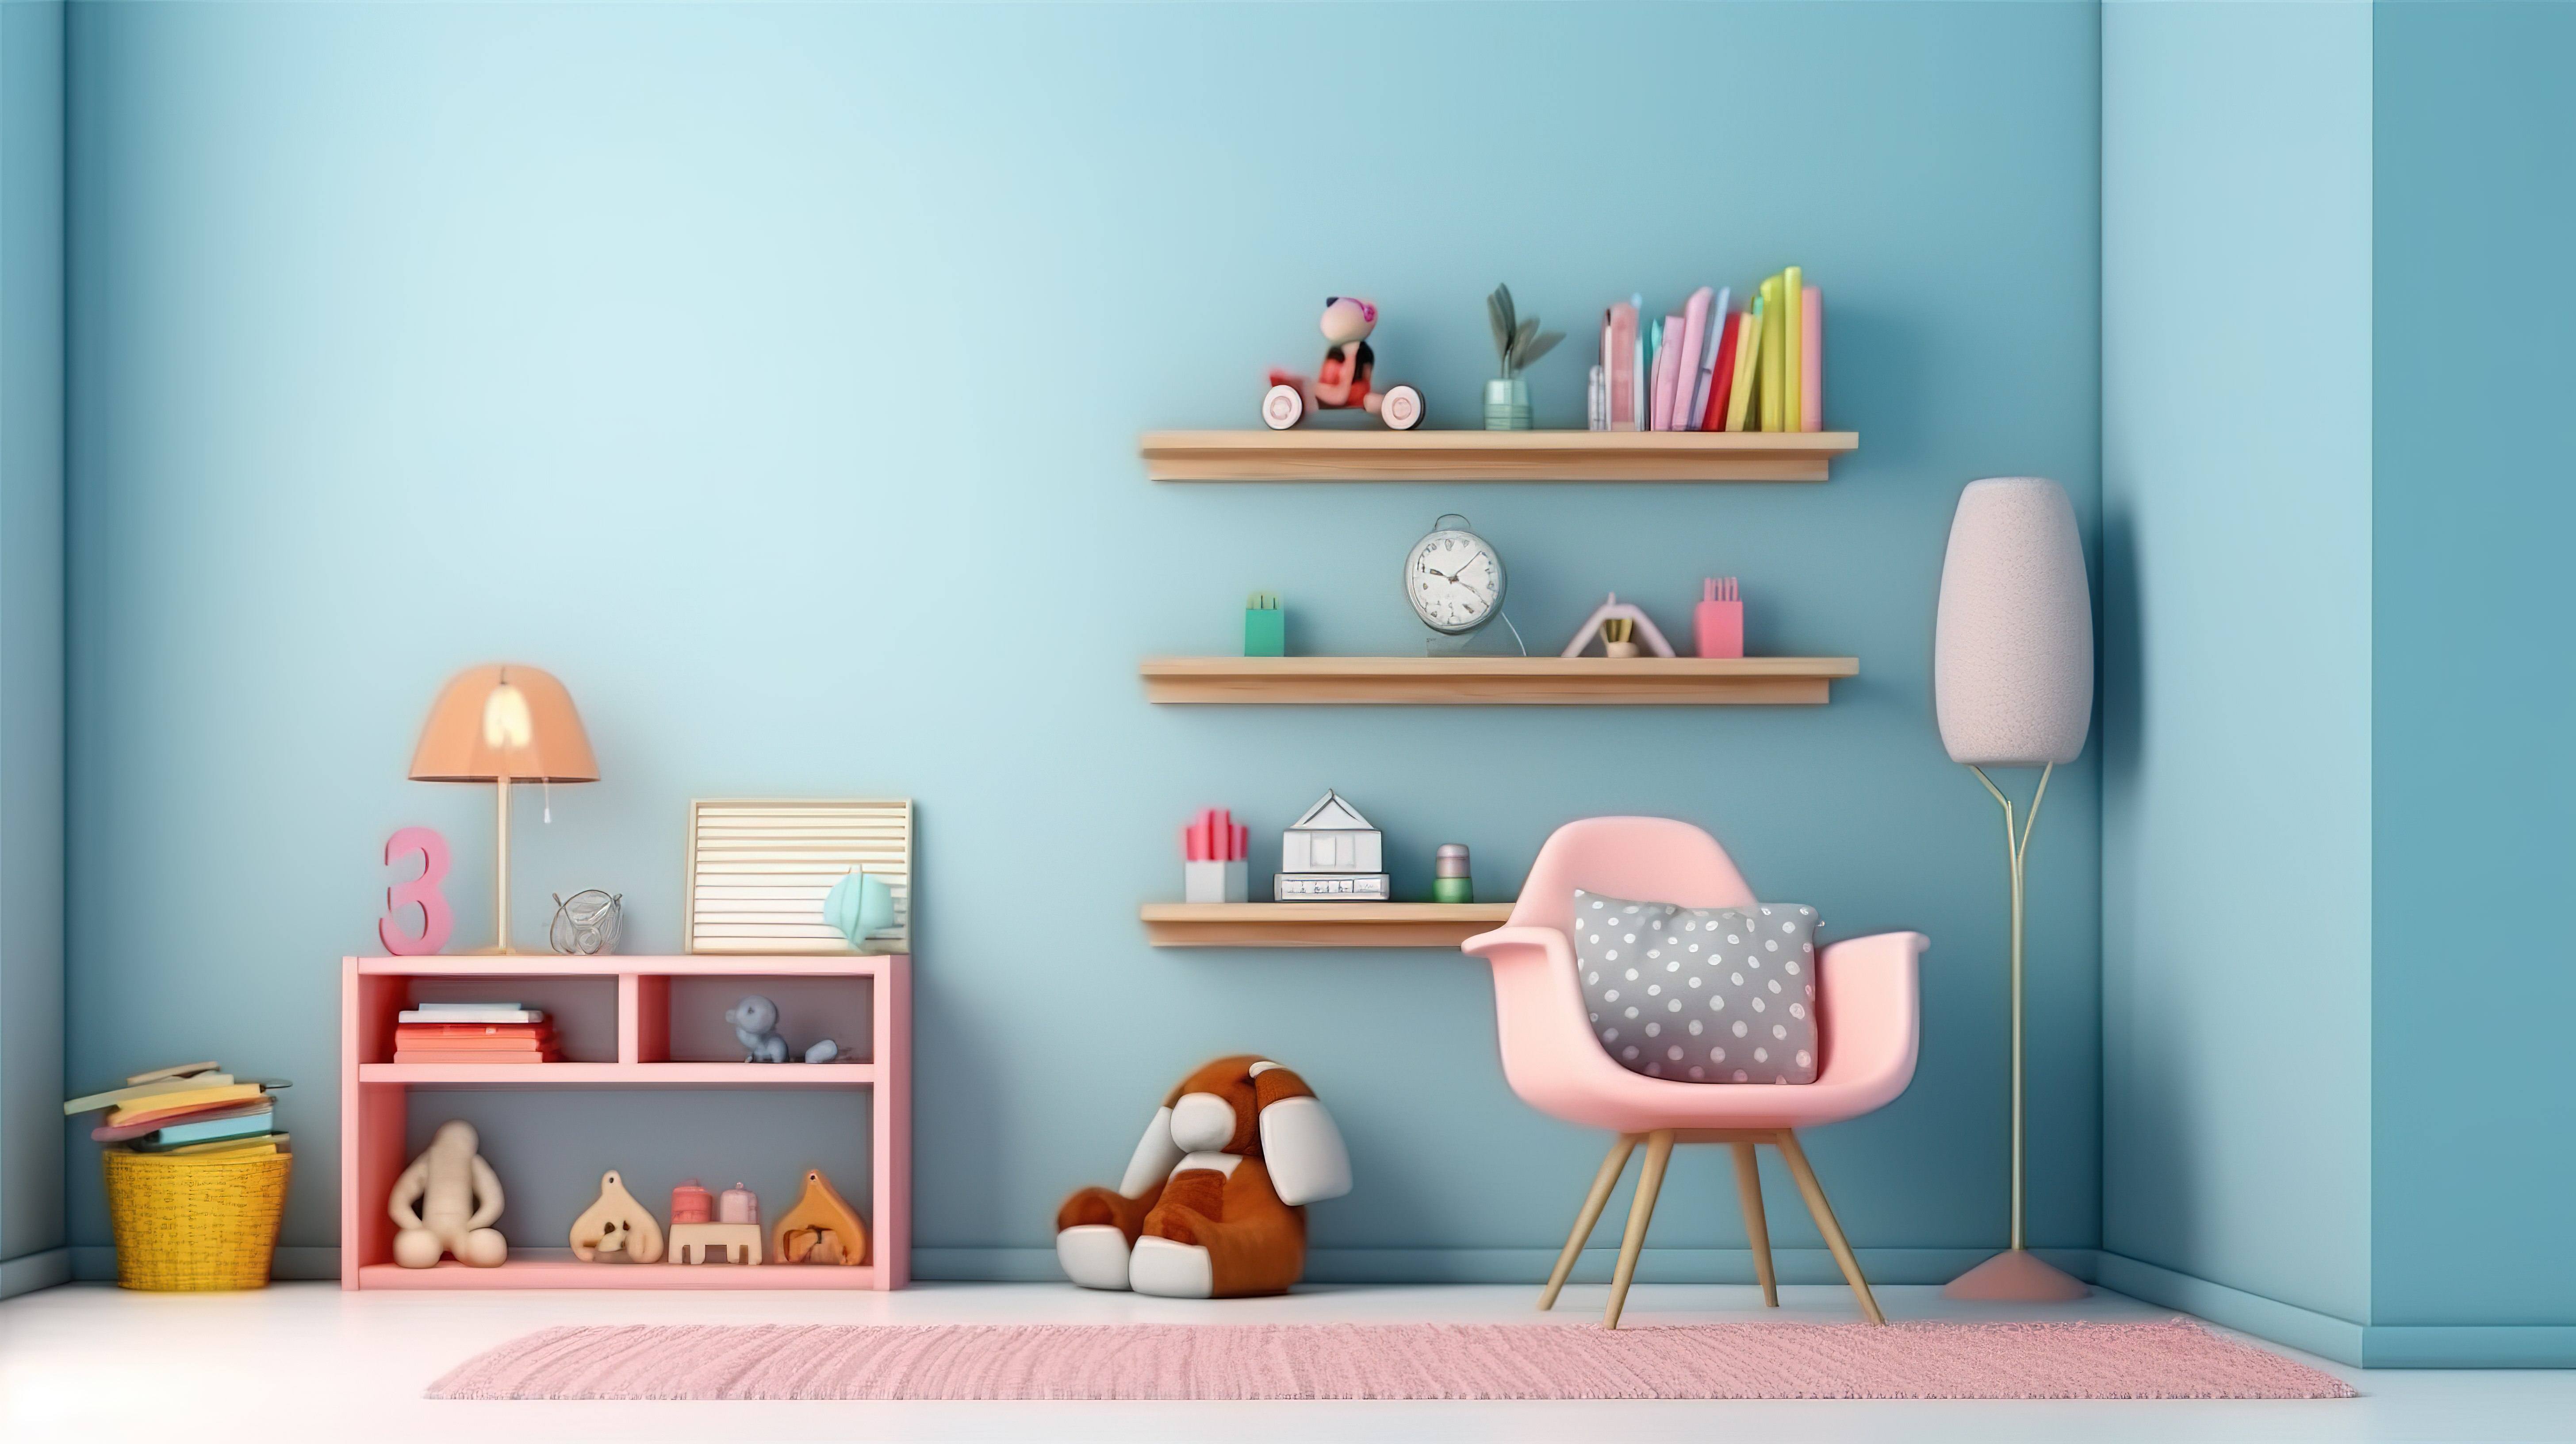 浅蓝色墙壁室内儿童房装饰的 3D 渲染图片